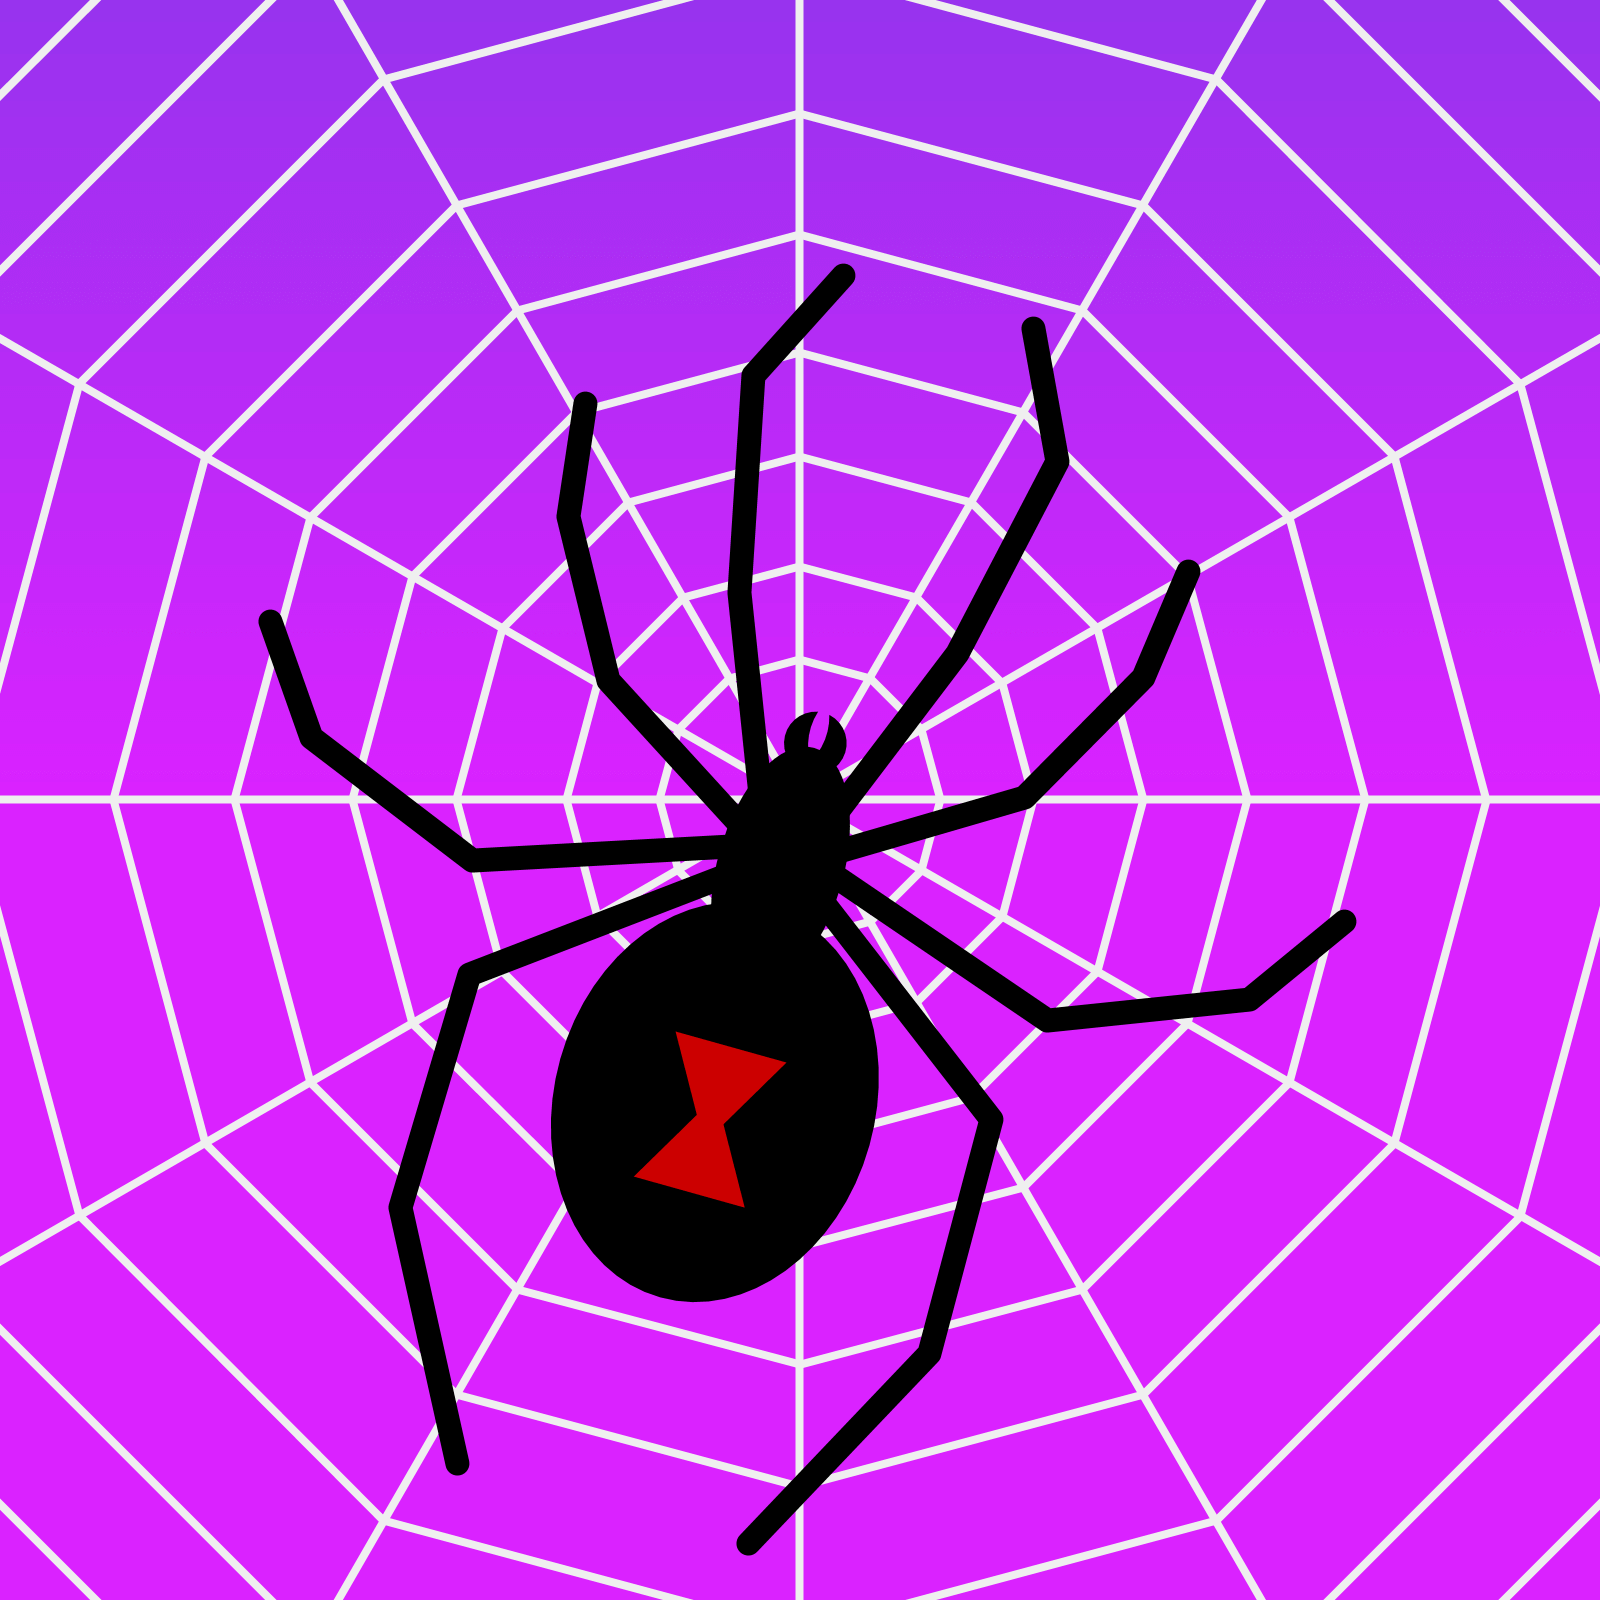 Spider web with black widow spider